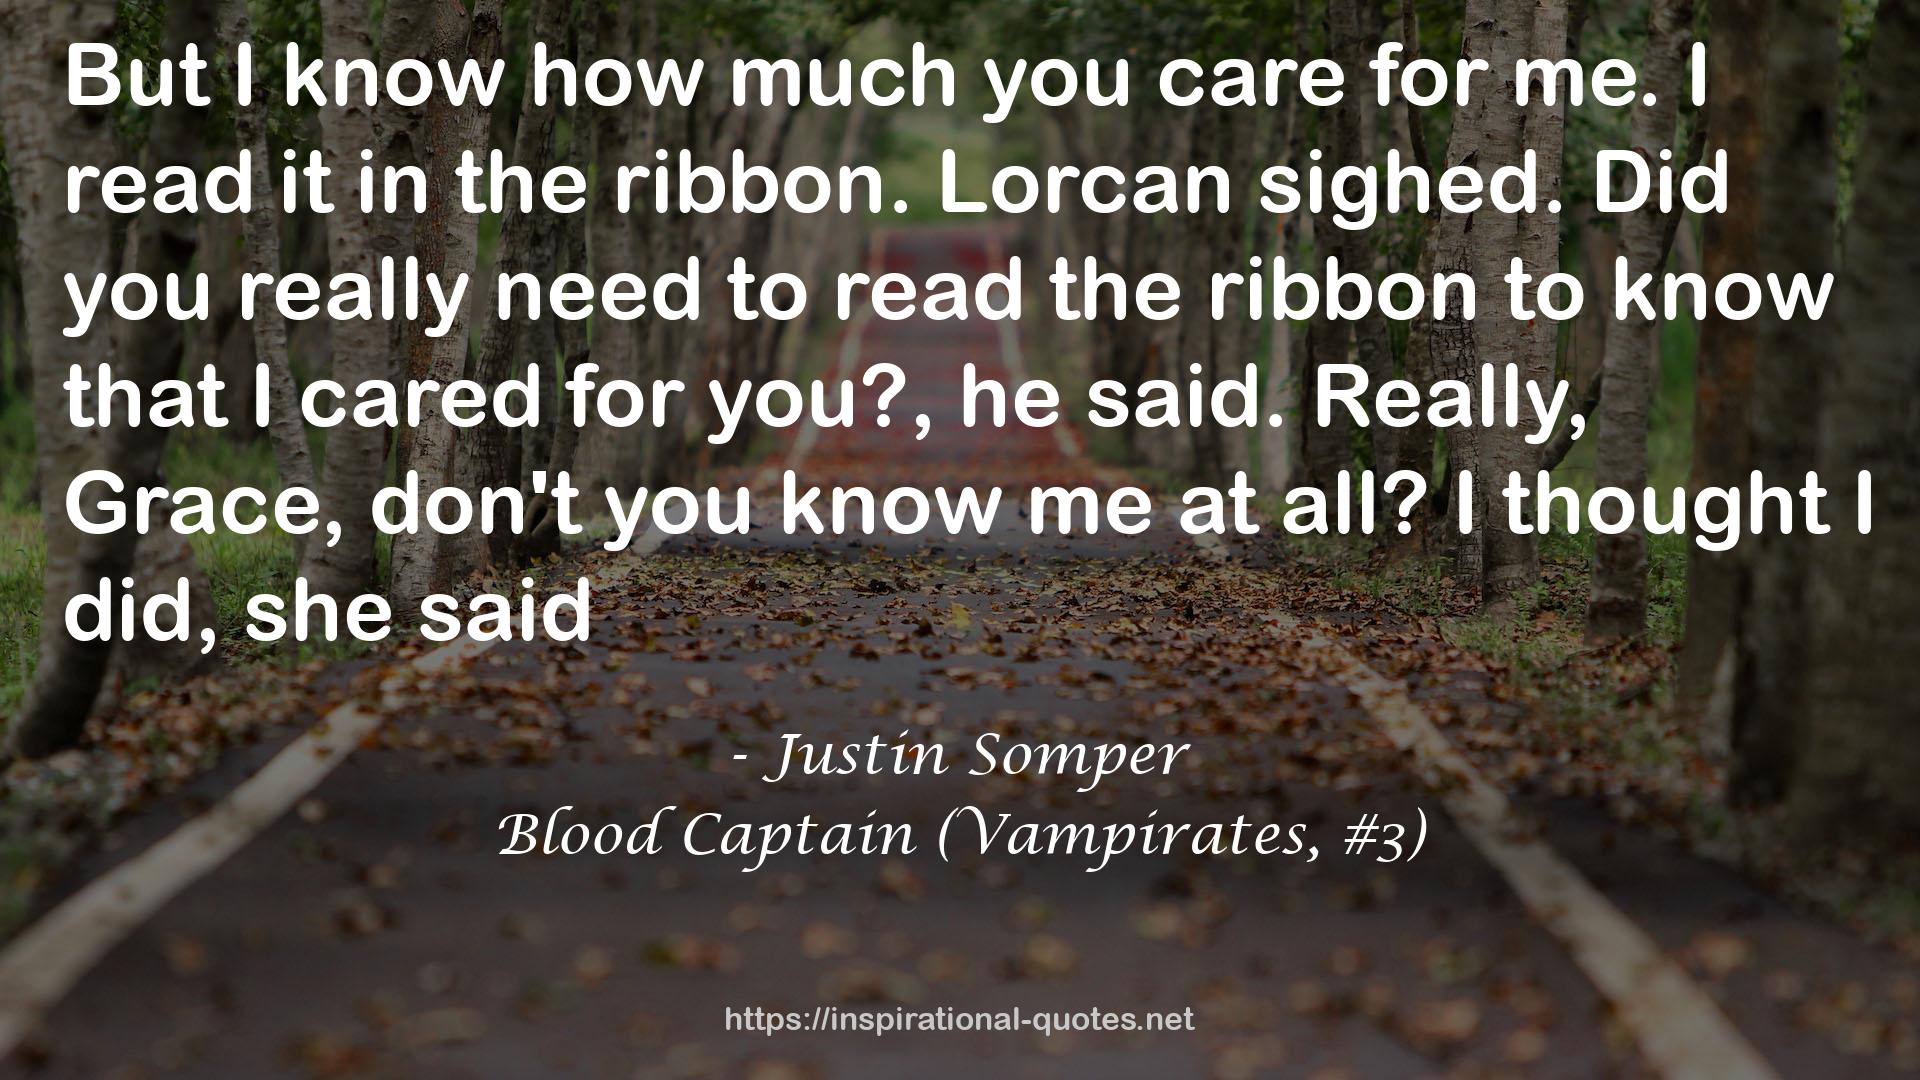 Blood Captain (Vampirates, #3) QUOTES